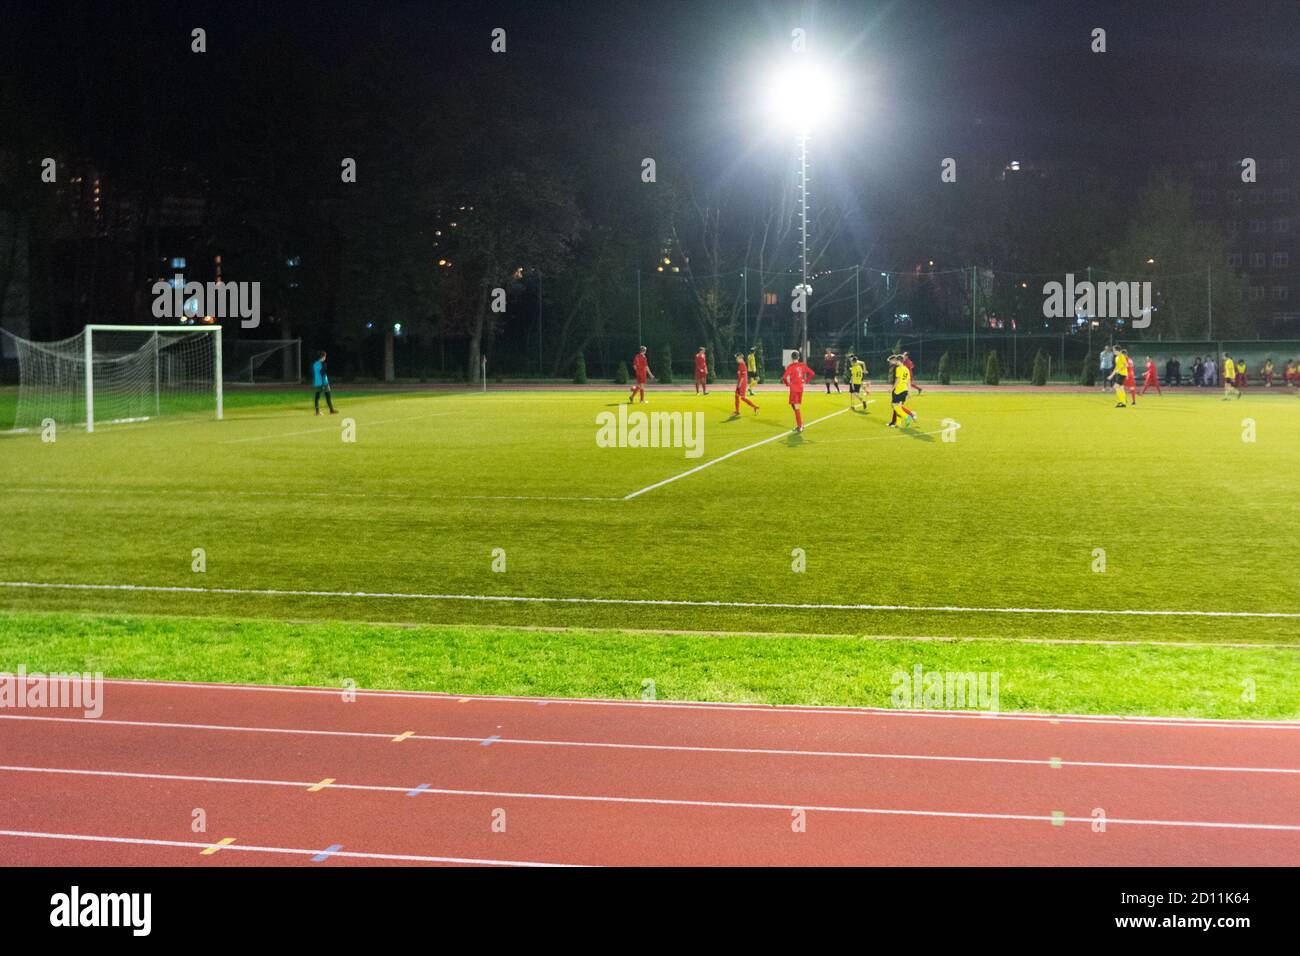 Giocatori che giocano una partita di calcio di notte Foto Stock